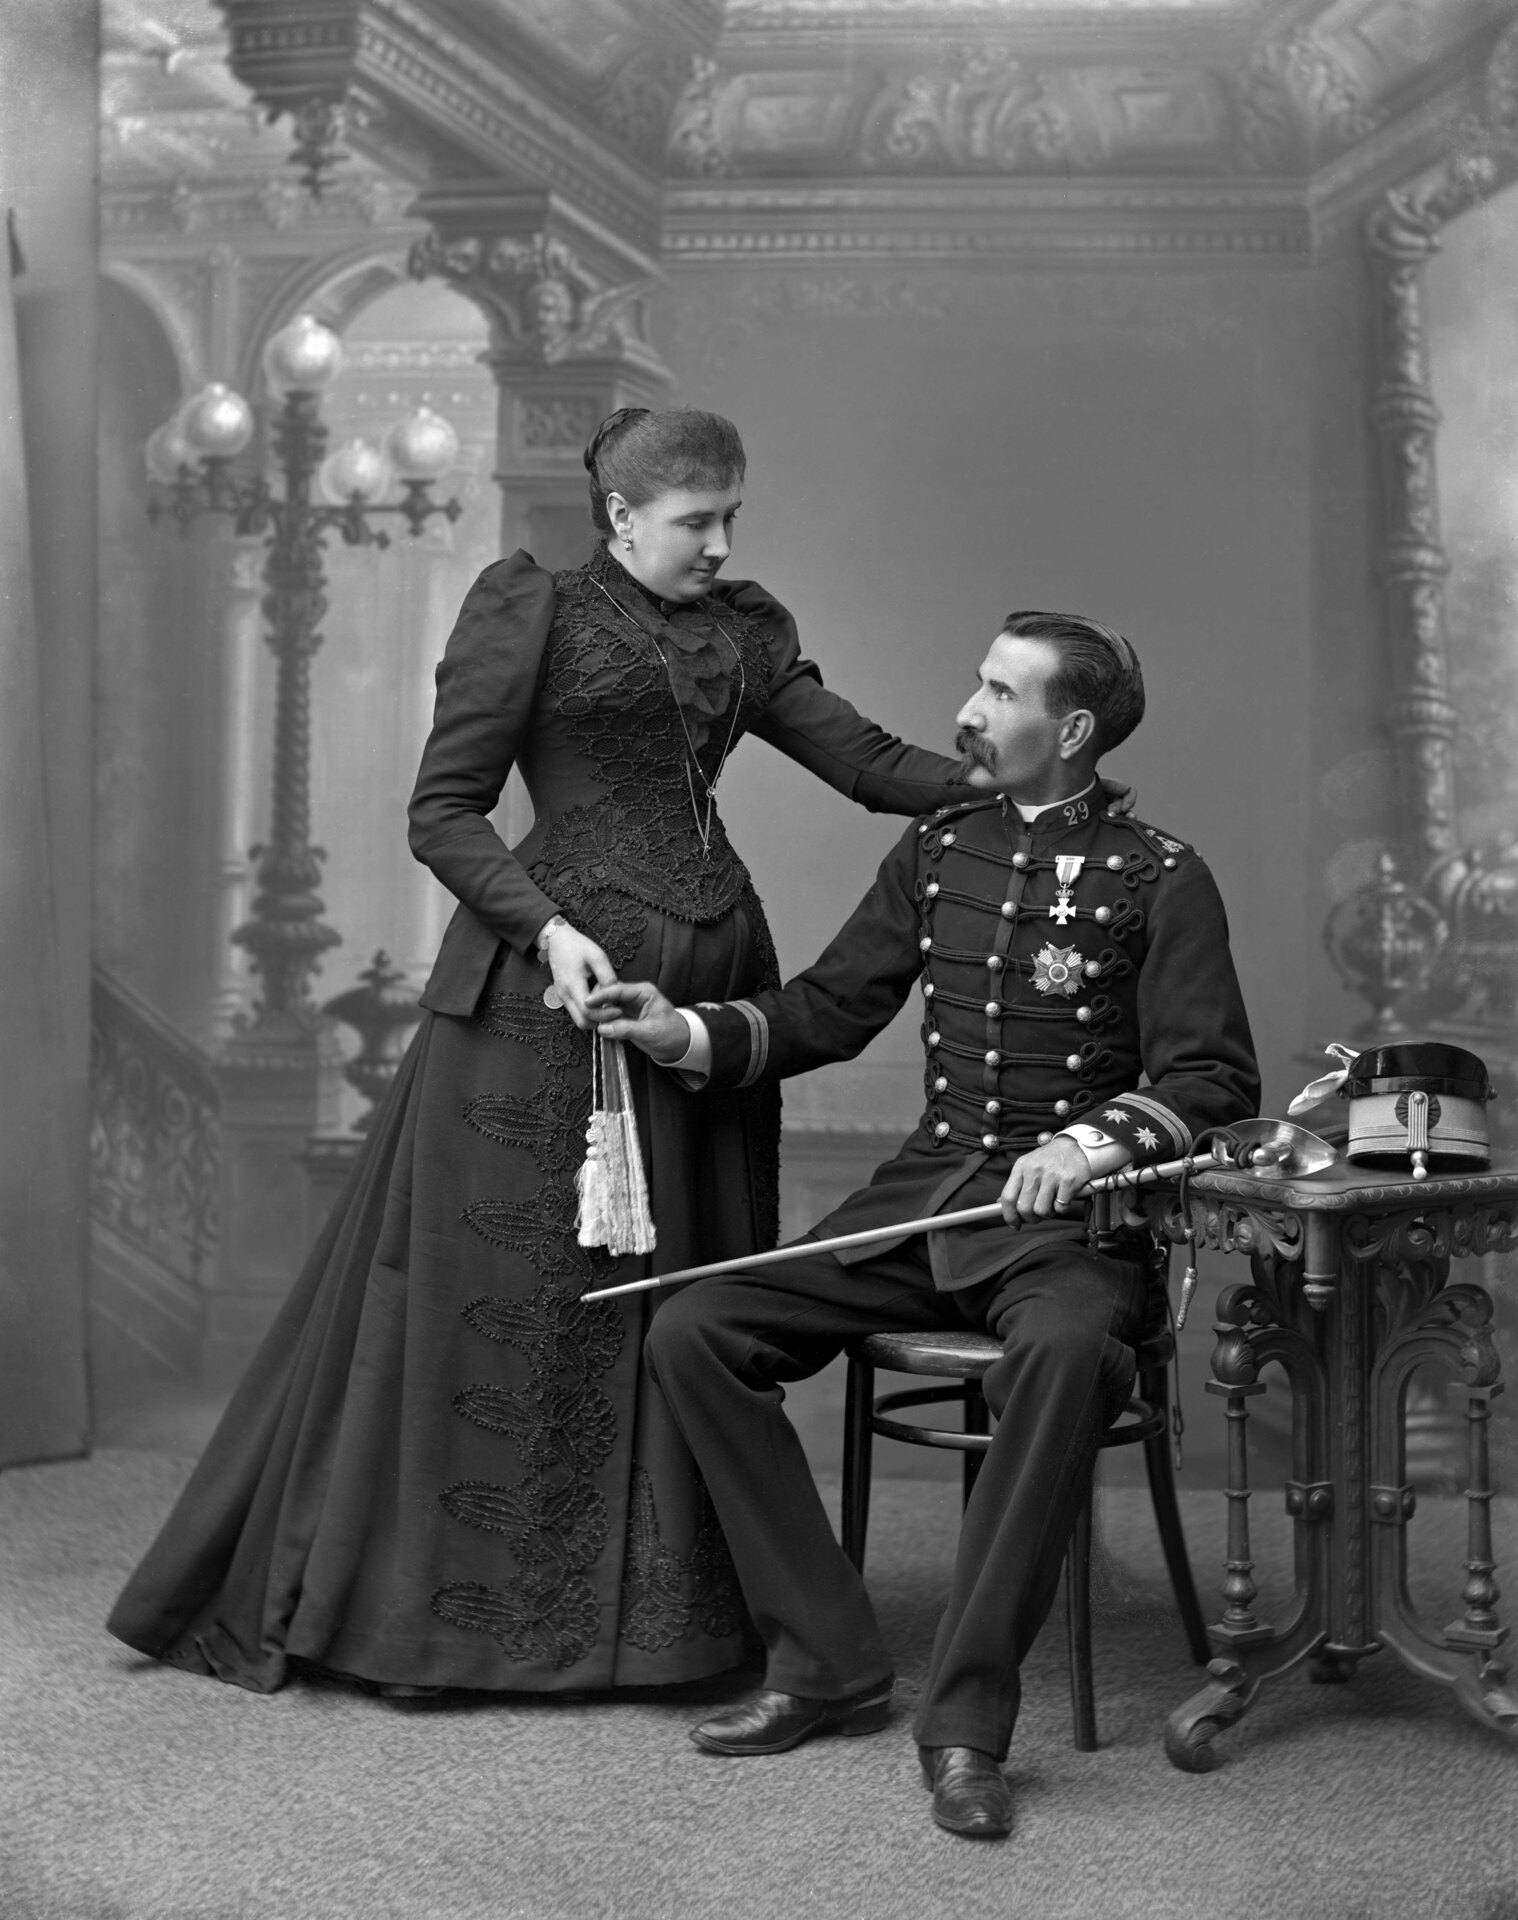 Agustín Zaragüeta Colmenares. Retrato de teniente coronel del Ejército con su esposa. Hacia 1900 